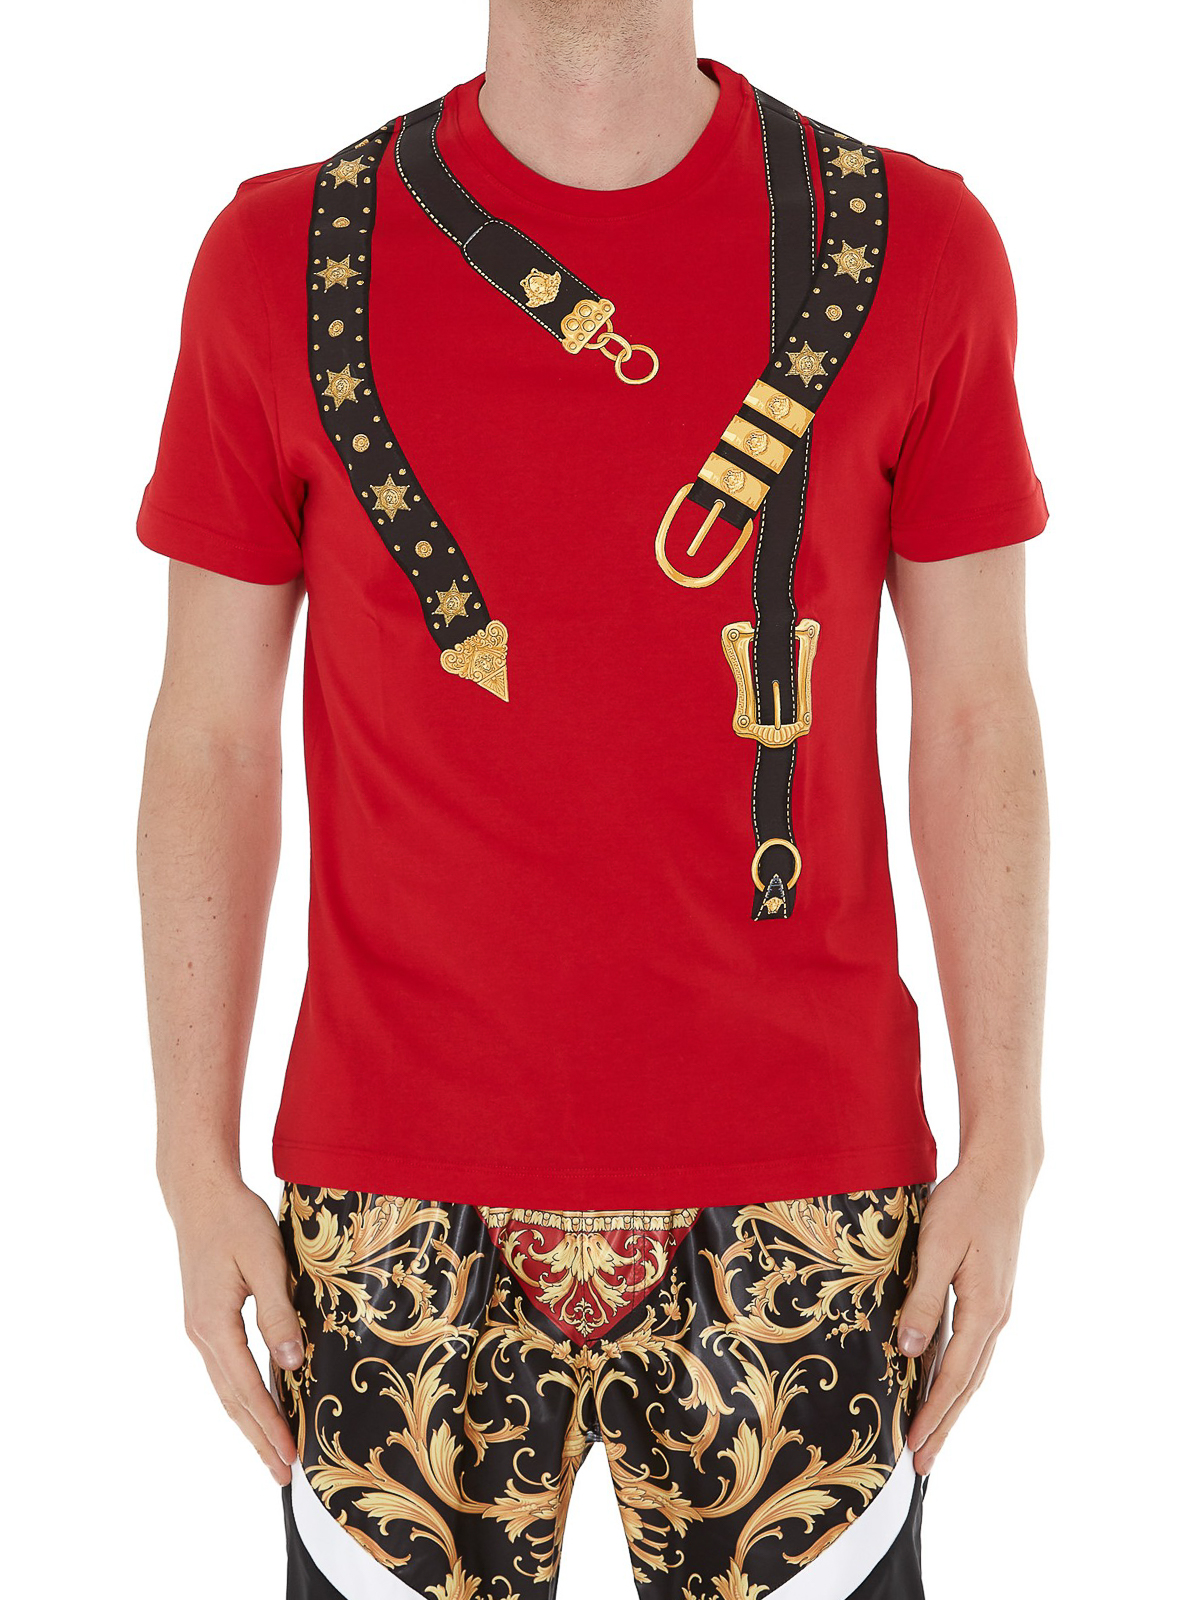 Afhankelijk Gewoon overlopen De gasten T-shirts Versace - Belt print T-shirt - A85176A228806A1227 | iKRIX.com